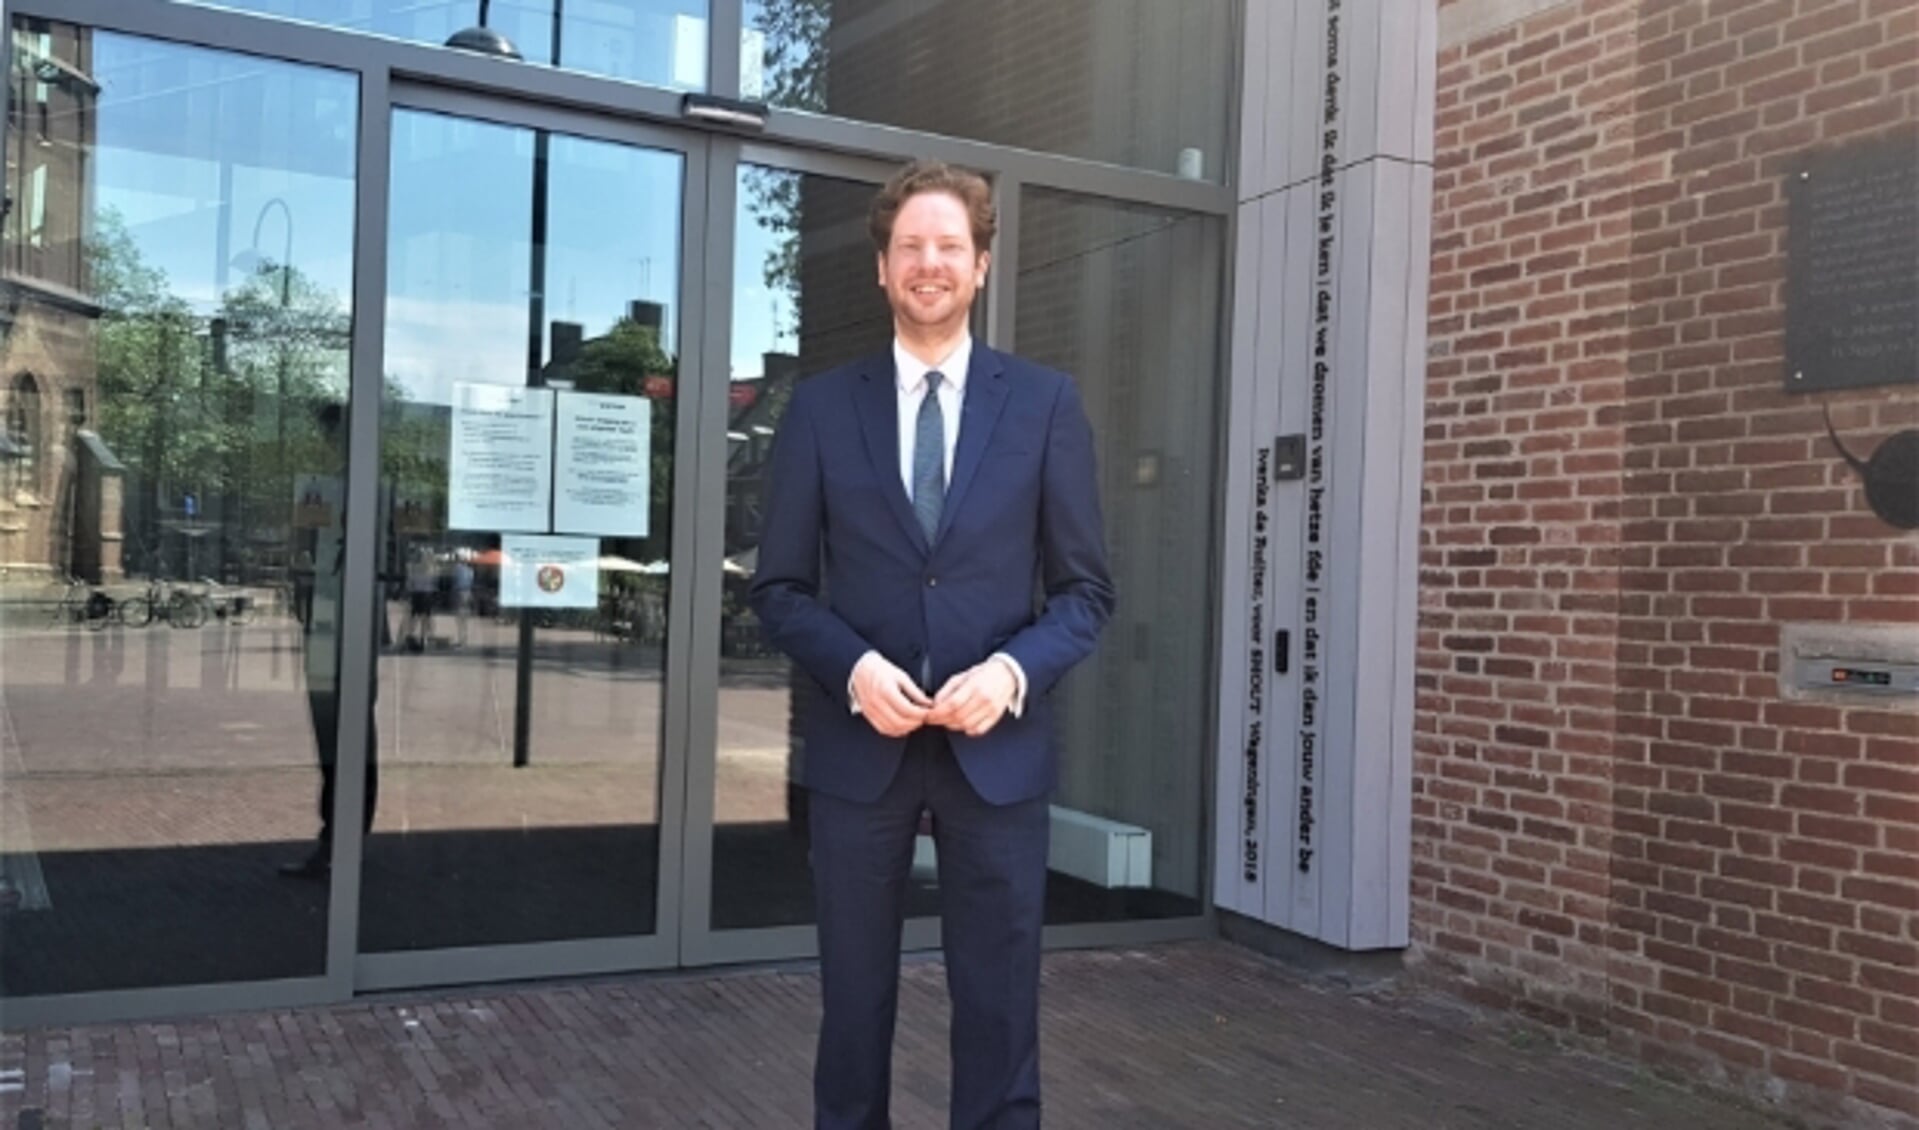 Floor Vermeulen is blij en vereerd met zijn nieuwe functie als burgemeester van Wageningen. (foto: Kees Stap)